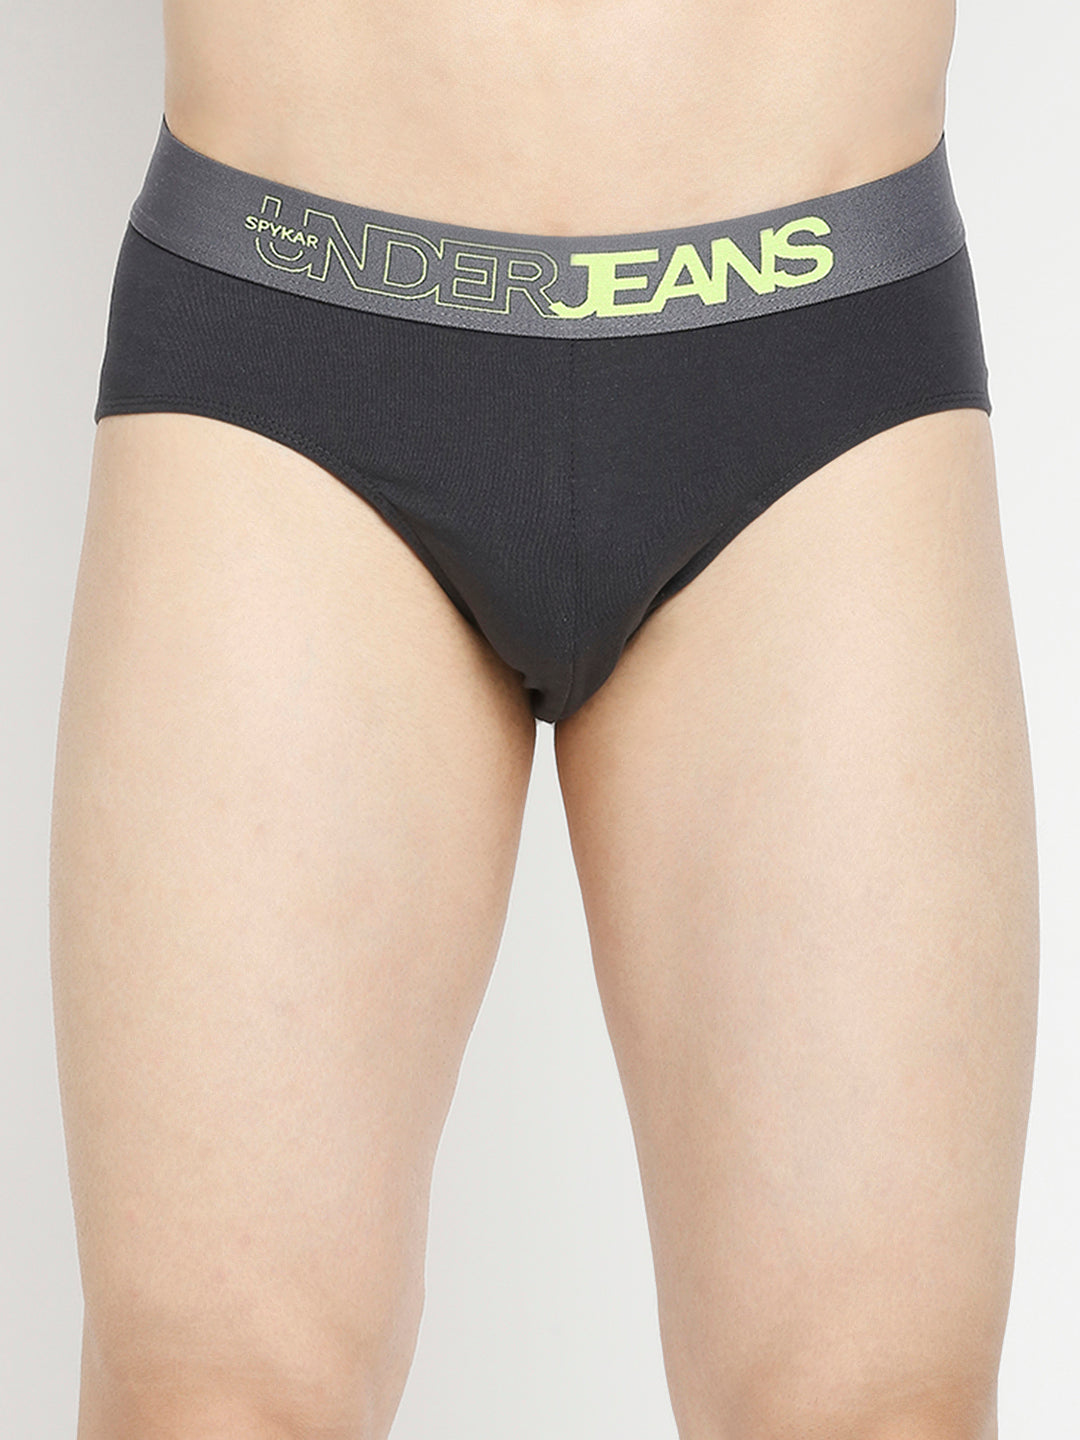 Men Premium Dark Grey & Olive Cotton Blend Brief - Pack Of 2- UnderJeans by Spykar